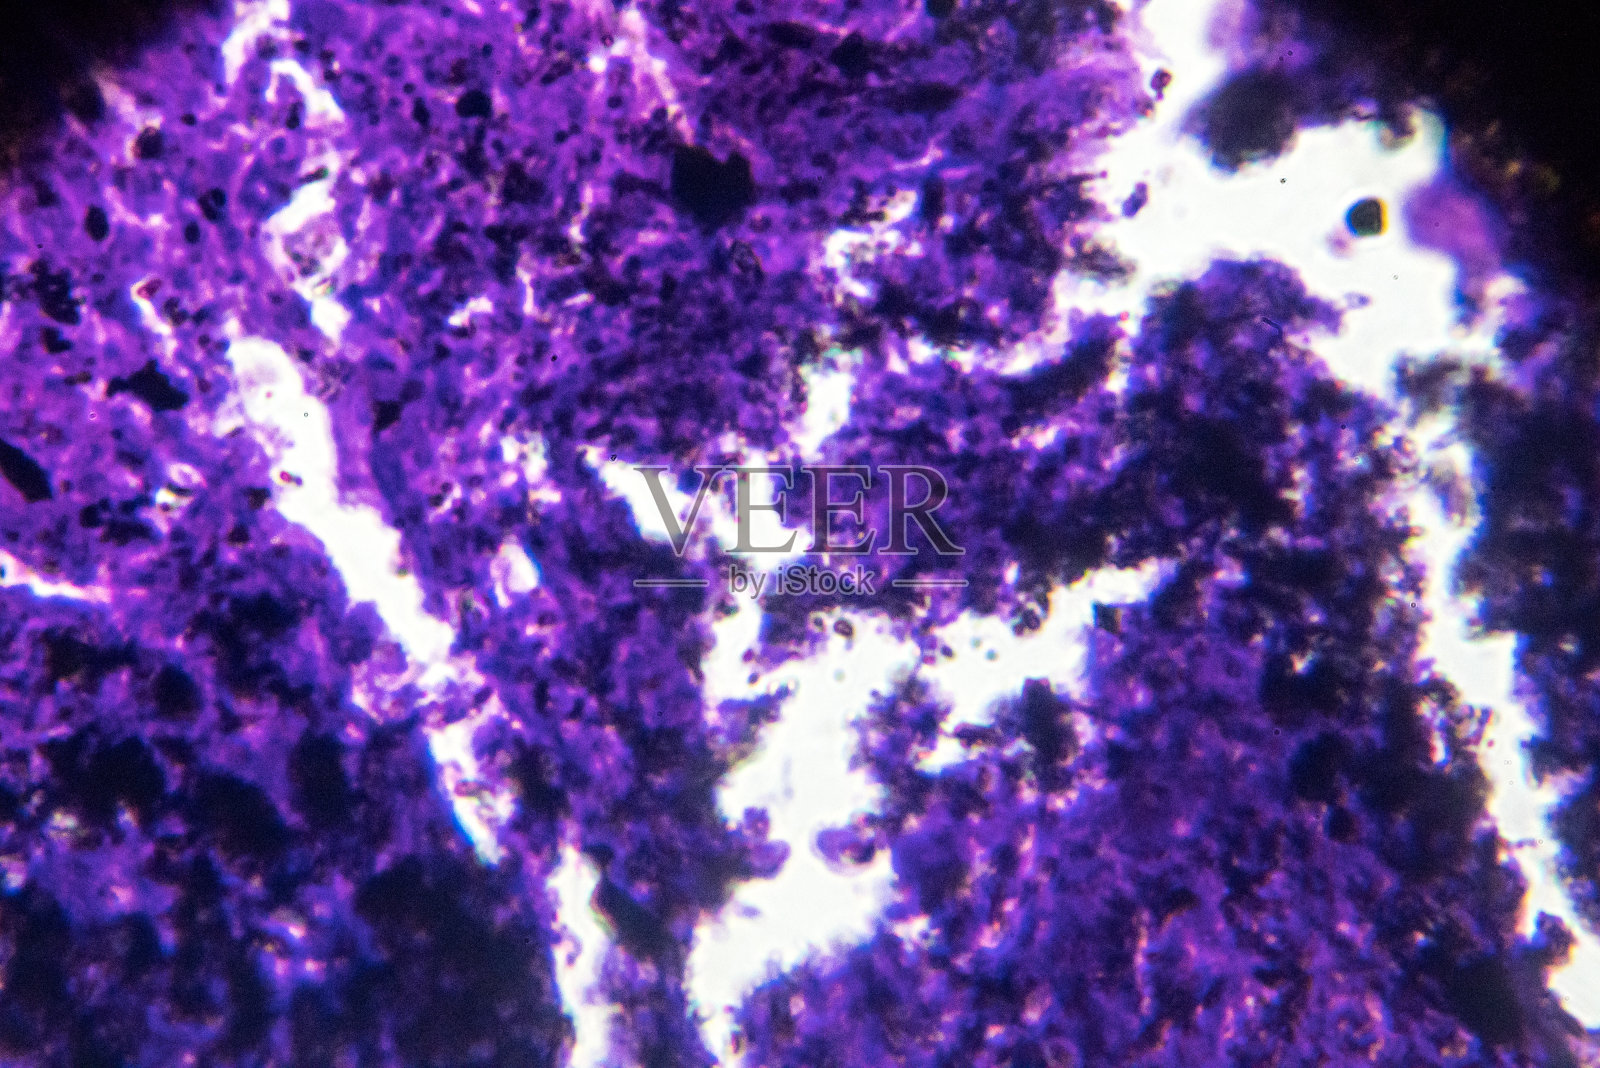 矽肺伴有黑色沉积的人体病理生物样本照片摄影图片